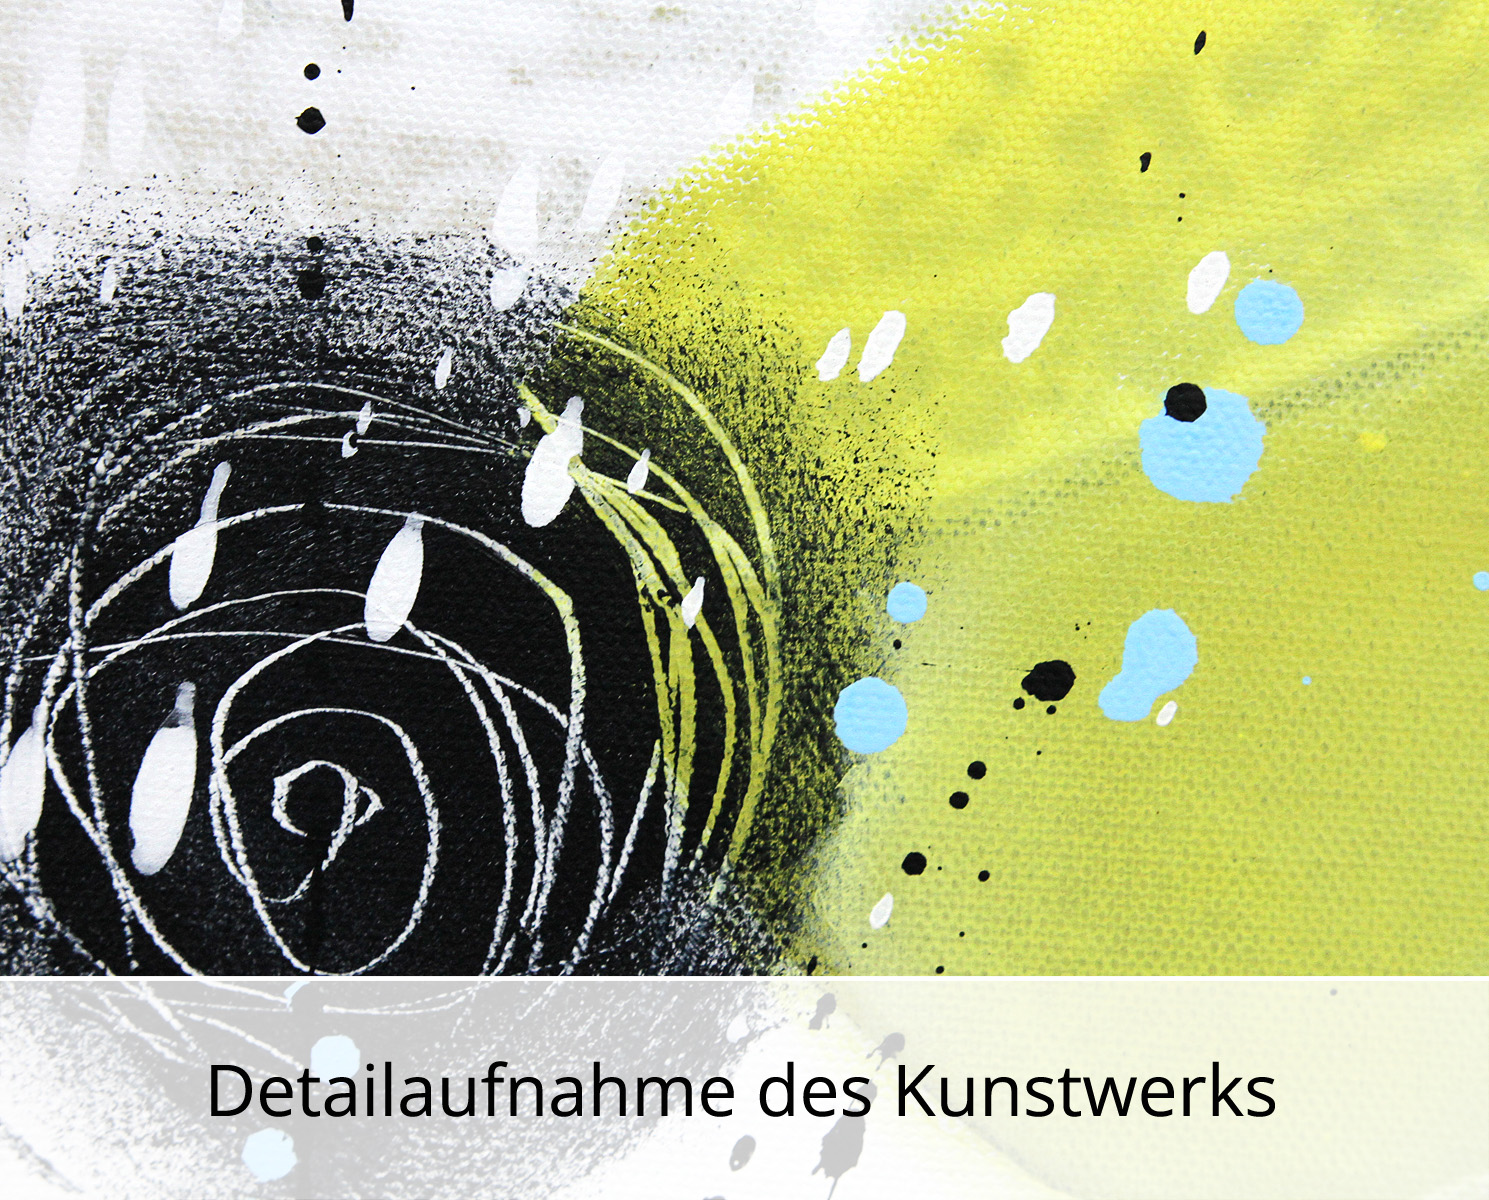 M.Kühne: "Dancing bubbles", modernes Originalgemälde (Unikat)